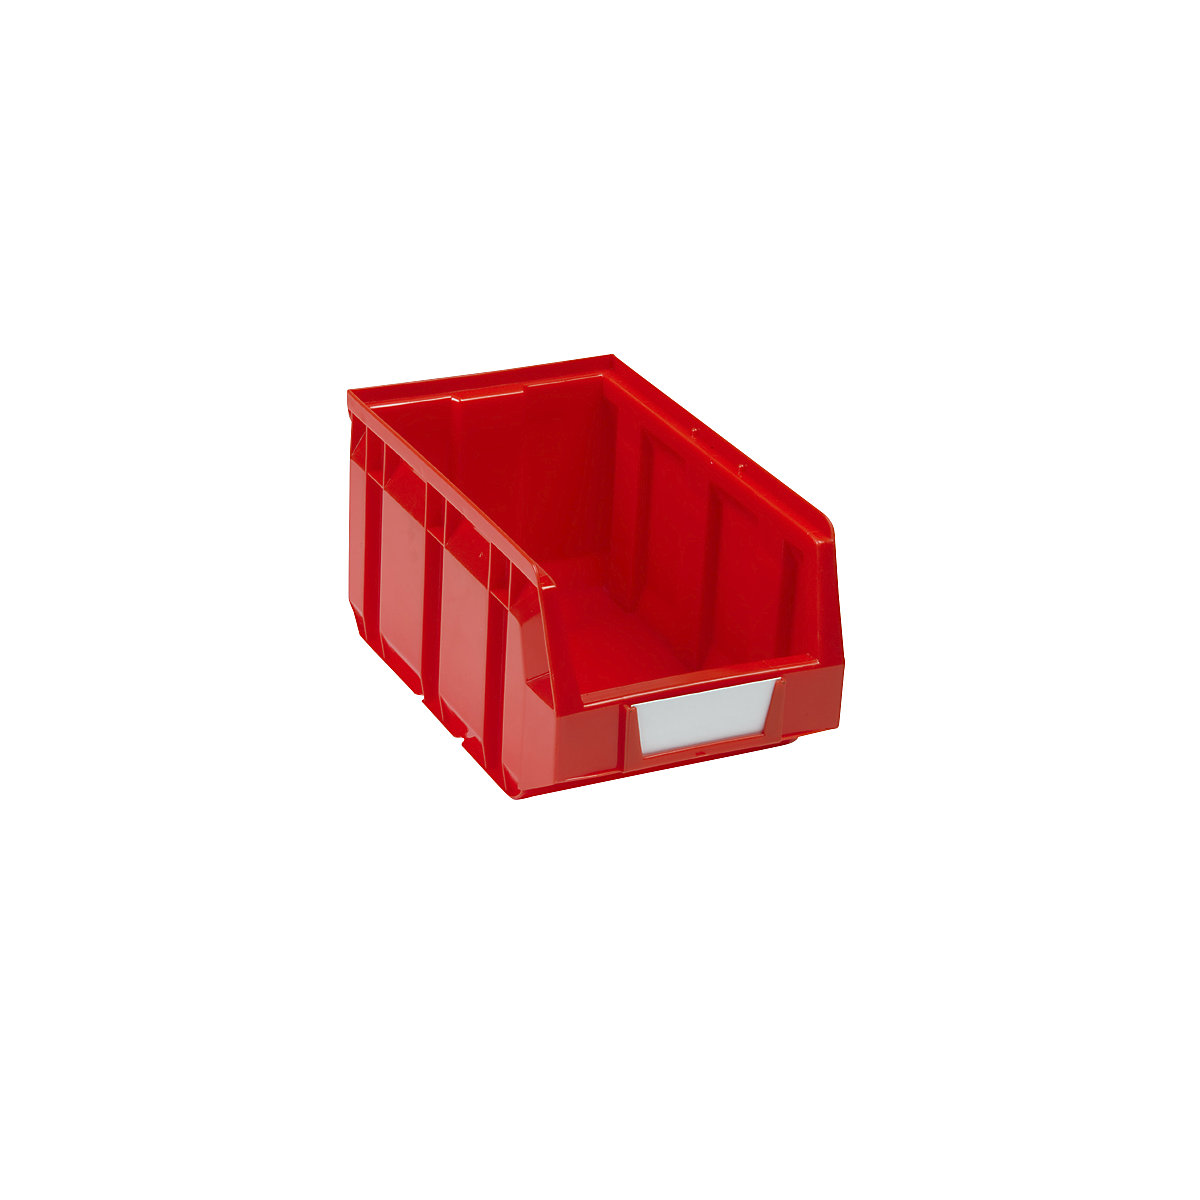 Otvorena skladišna kutija od polietilena, DxŠxV 237 x 144 x 123 mm, u crvenoj boji, pak. 38 kom.-8